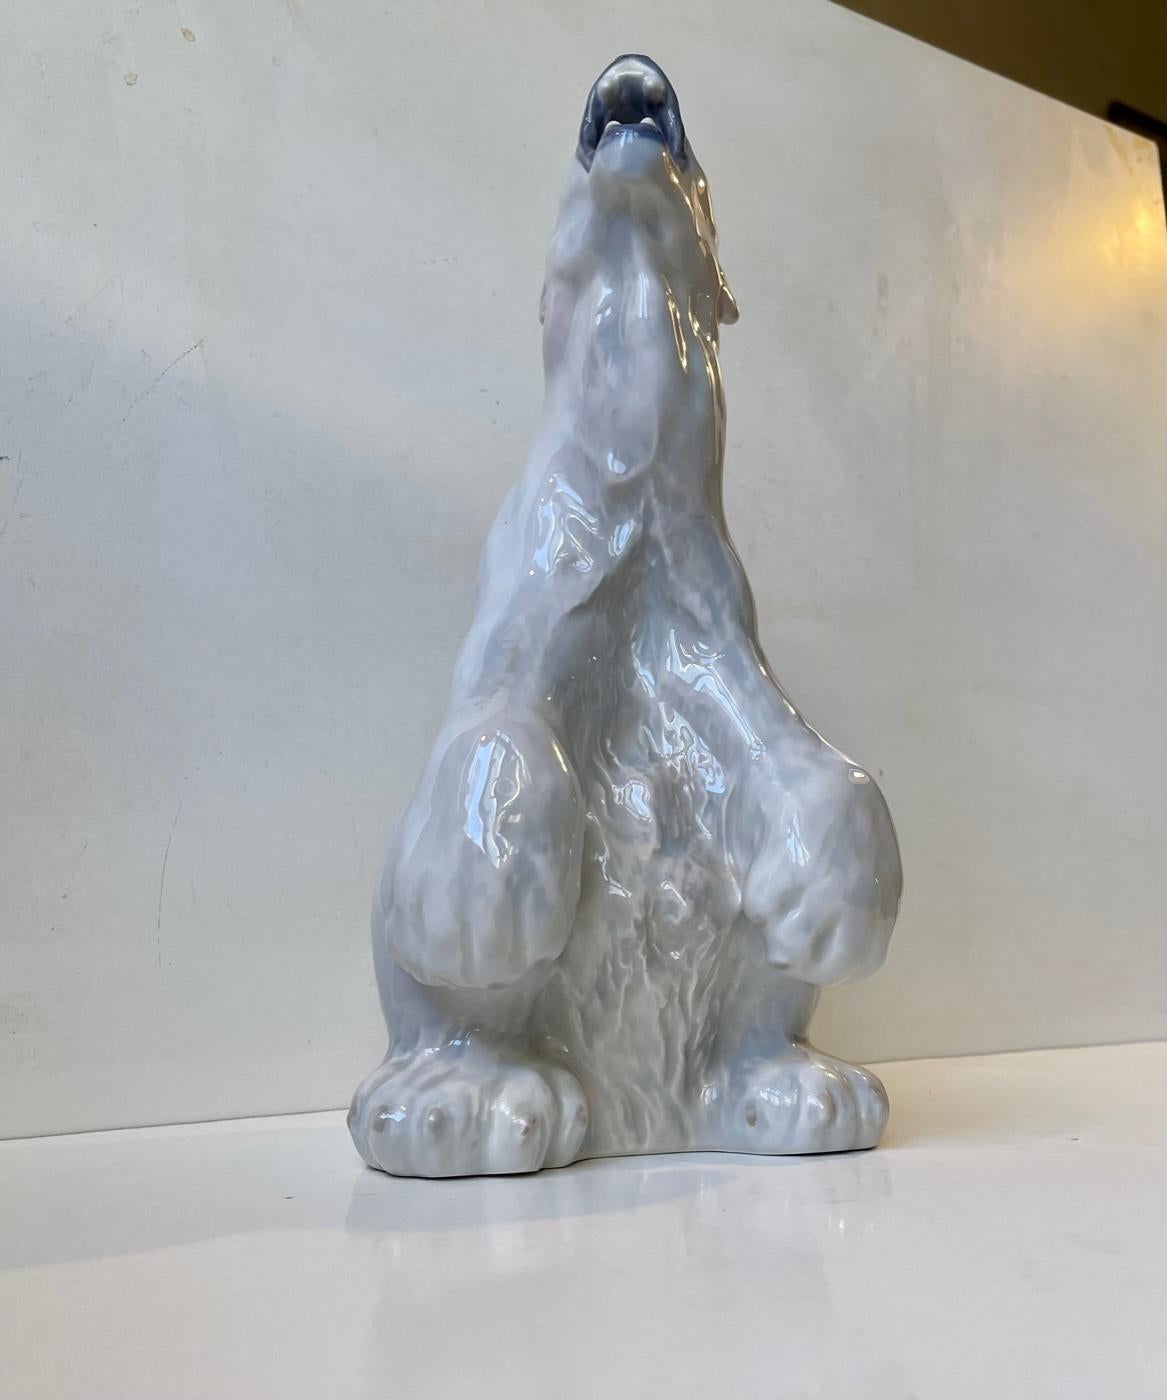 Große brüllende Eisbär-Figur aus Porzellan.  Entworfen im Jahr 1901 von Carl Frederik Liisberg für Royal Copenhagen. Dieses Beispiel stammt aus den 1960er Jahren. Modell Nr. 502. Maße: Höhe 32 cm / 12.3